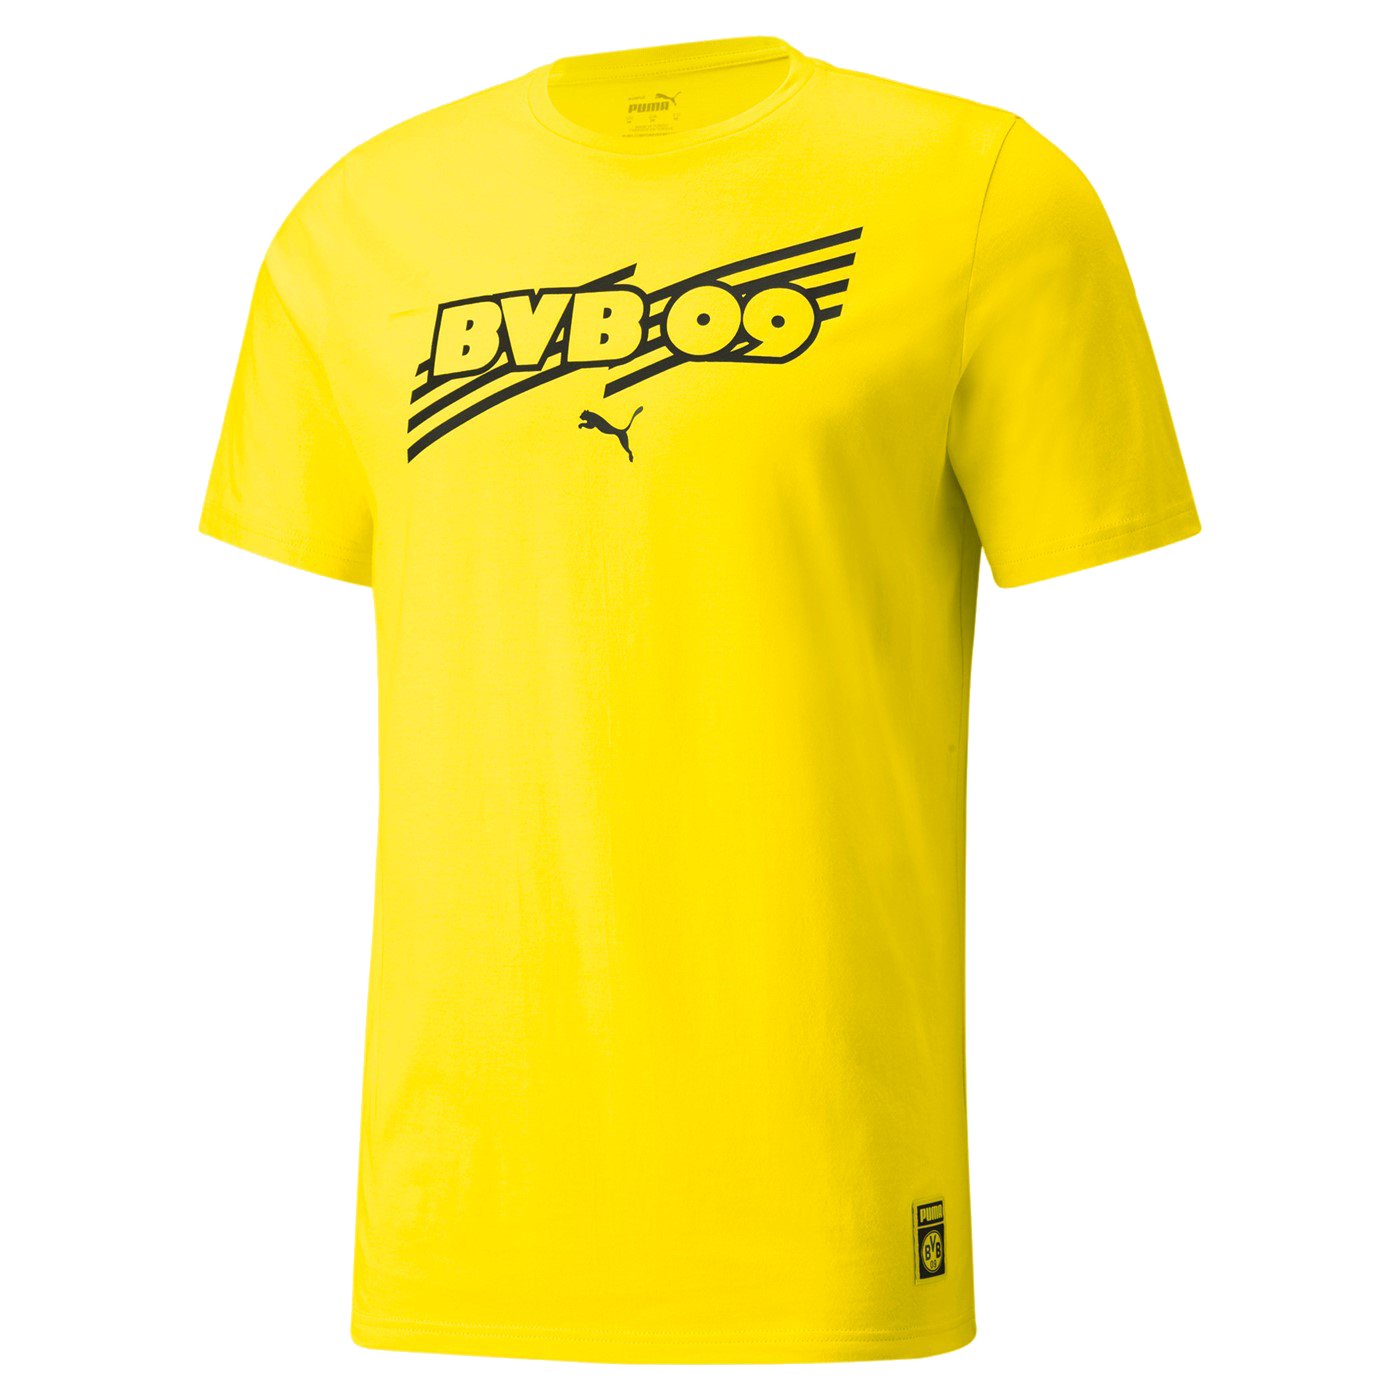 Puma Borussia Dortmund FtblCore žlutá/černá UK S Pánské